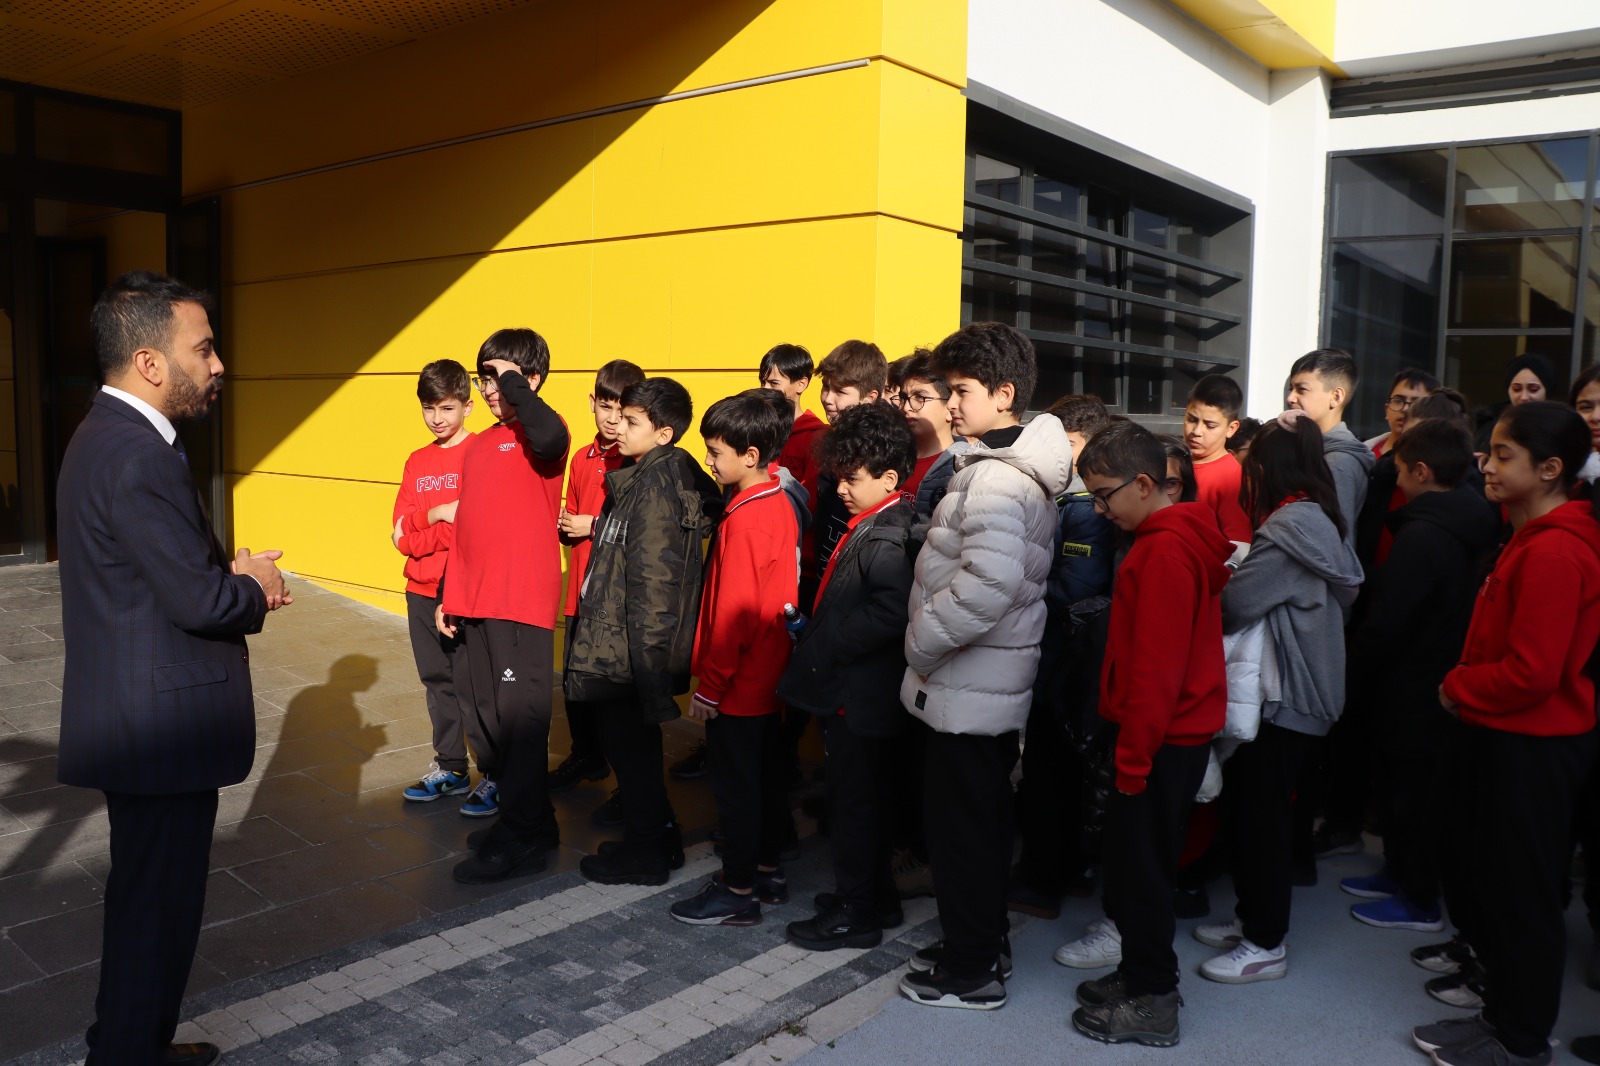 Büyükşehir'in Engelleri Ortadan Kaldıran Merkezi, Öğrencileri Misafir Ediyor